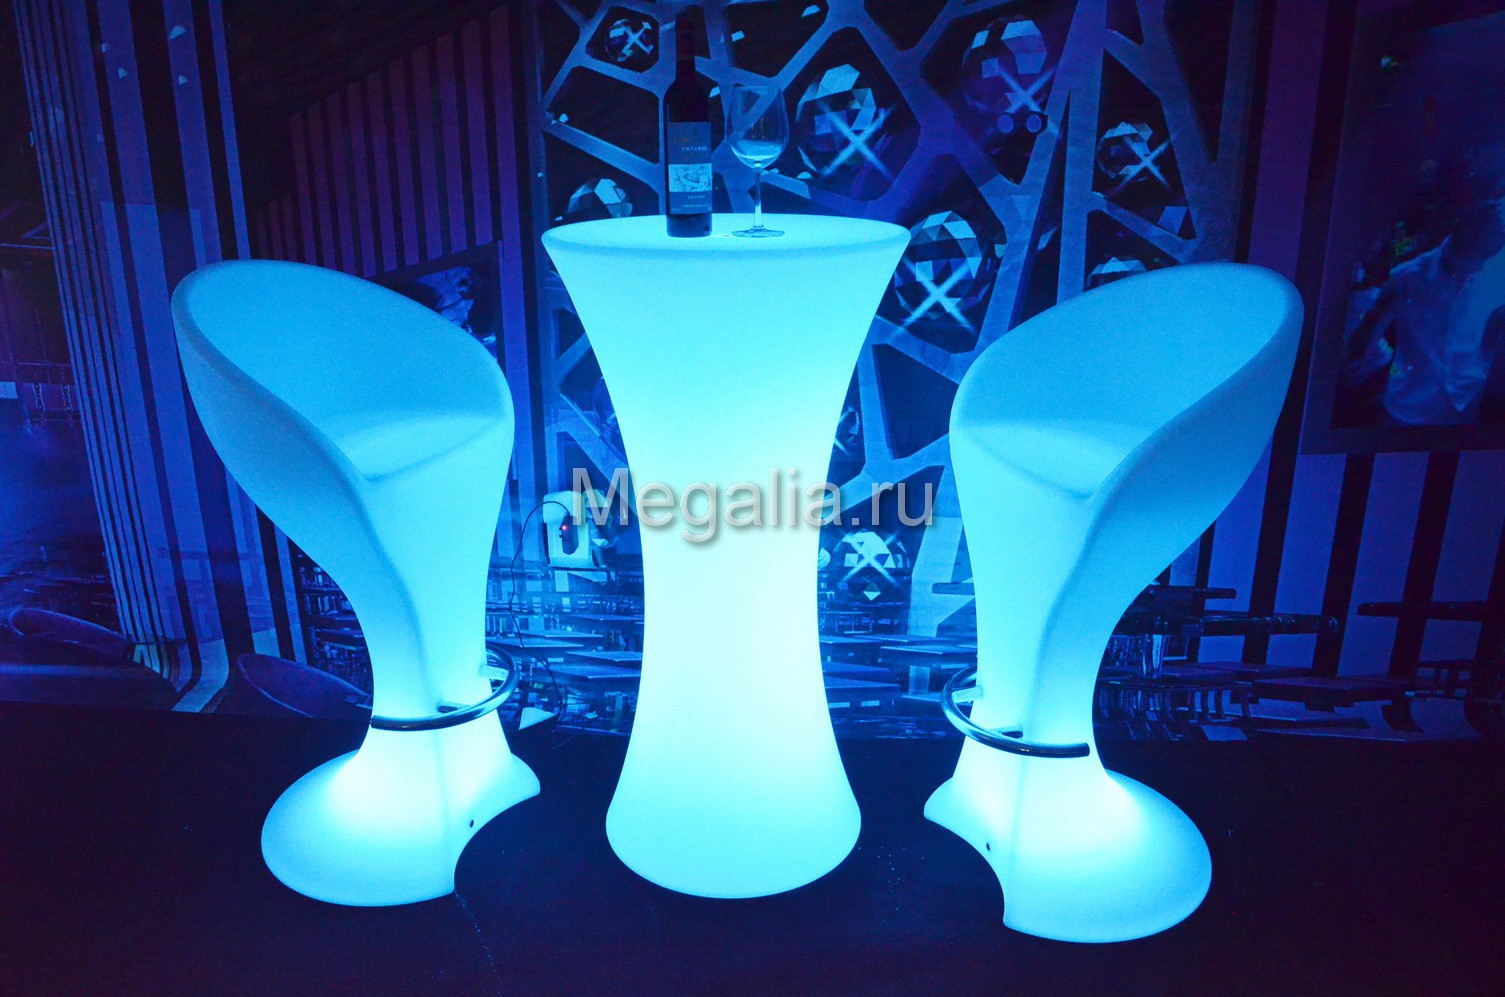 Светящийся коктейльный стол "Fougeres"